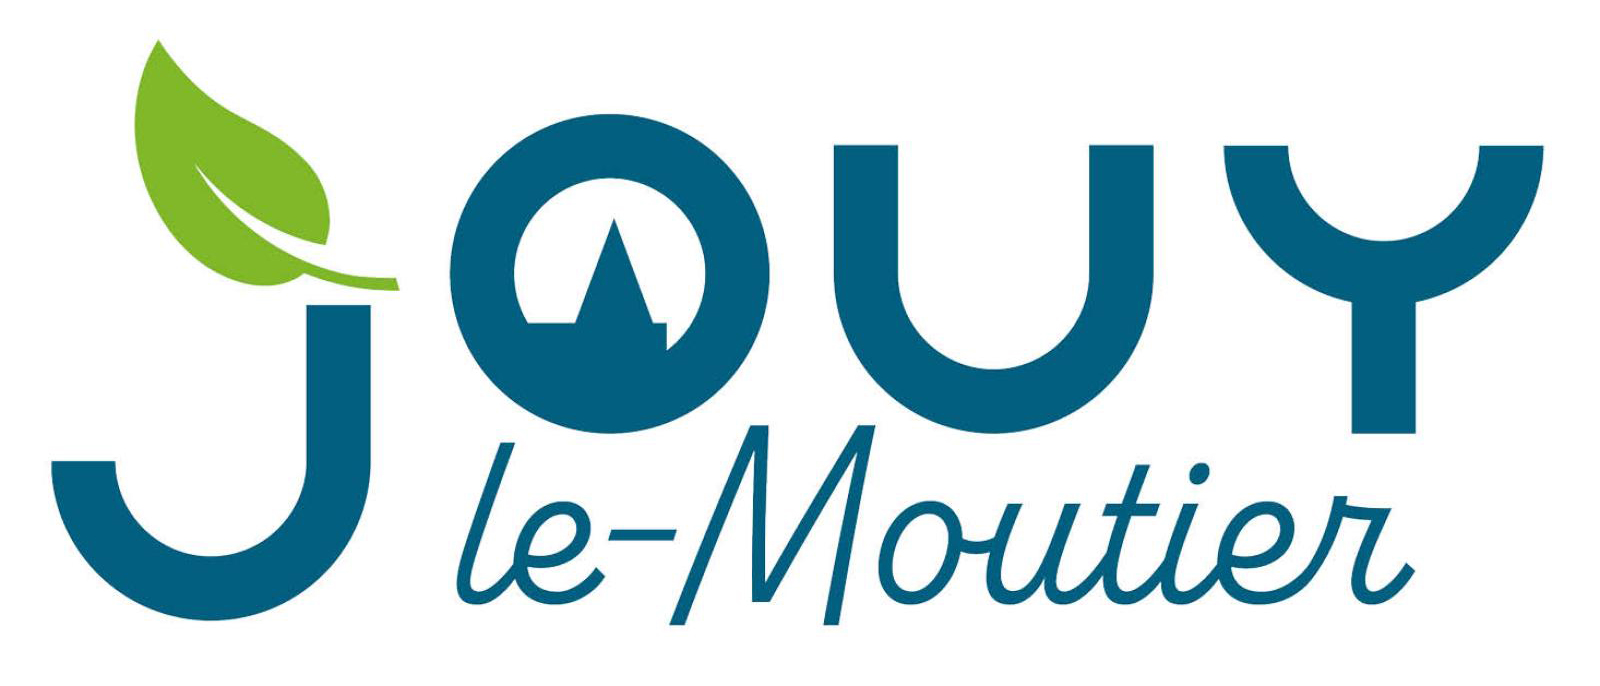 Logo de la ville de Jouy-le-Moutier